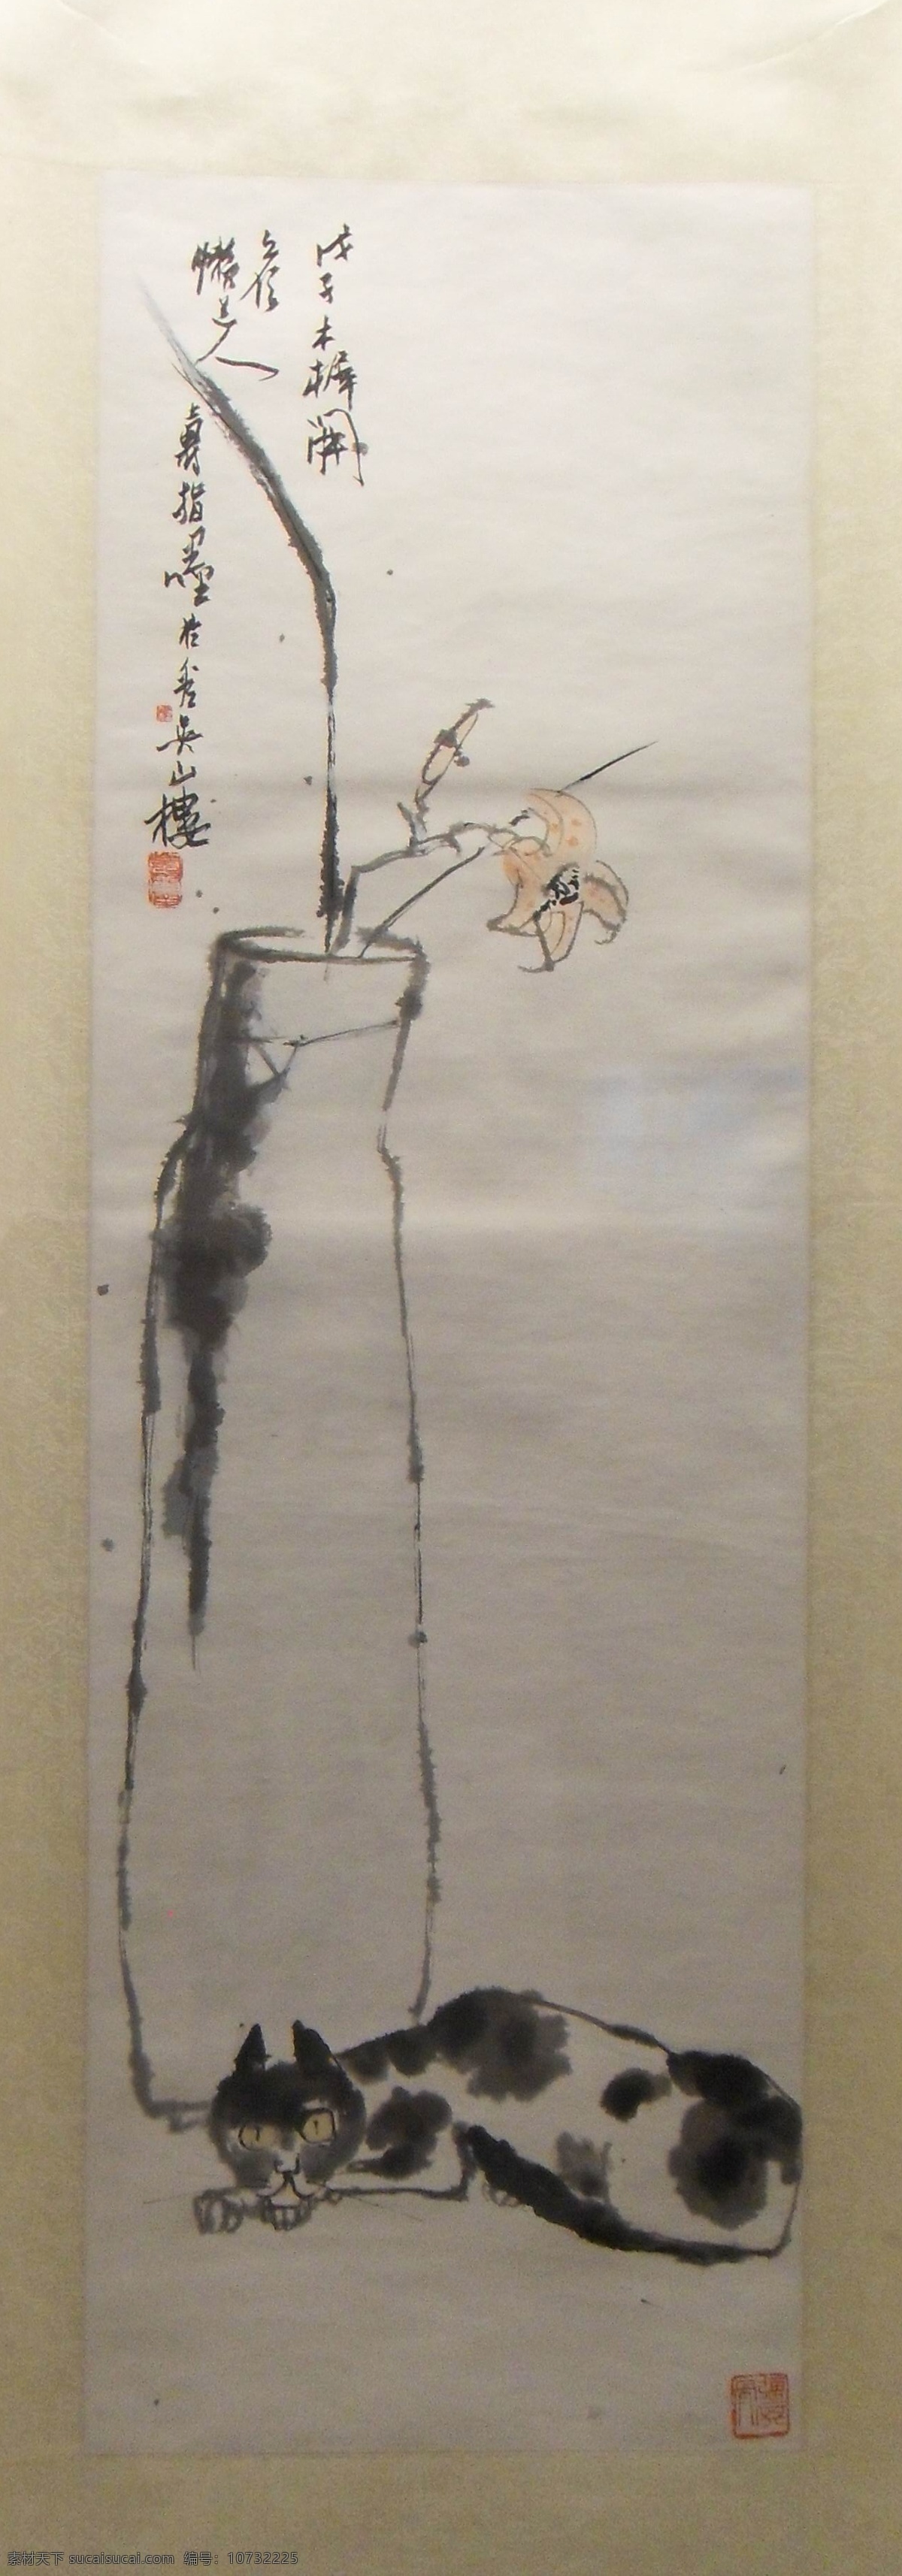 潘天寿作品 潘天寿 猫 国画 绘画 中国绘画 现代 名画 水墨画 绘画书法 文化艺术